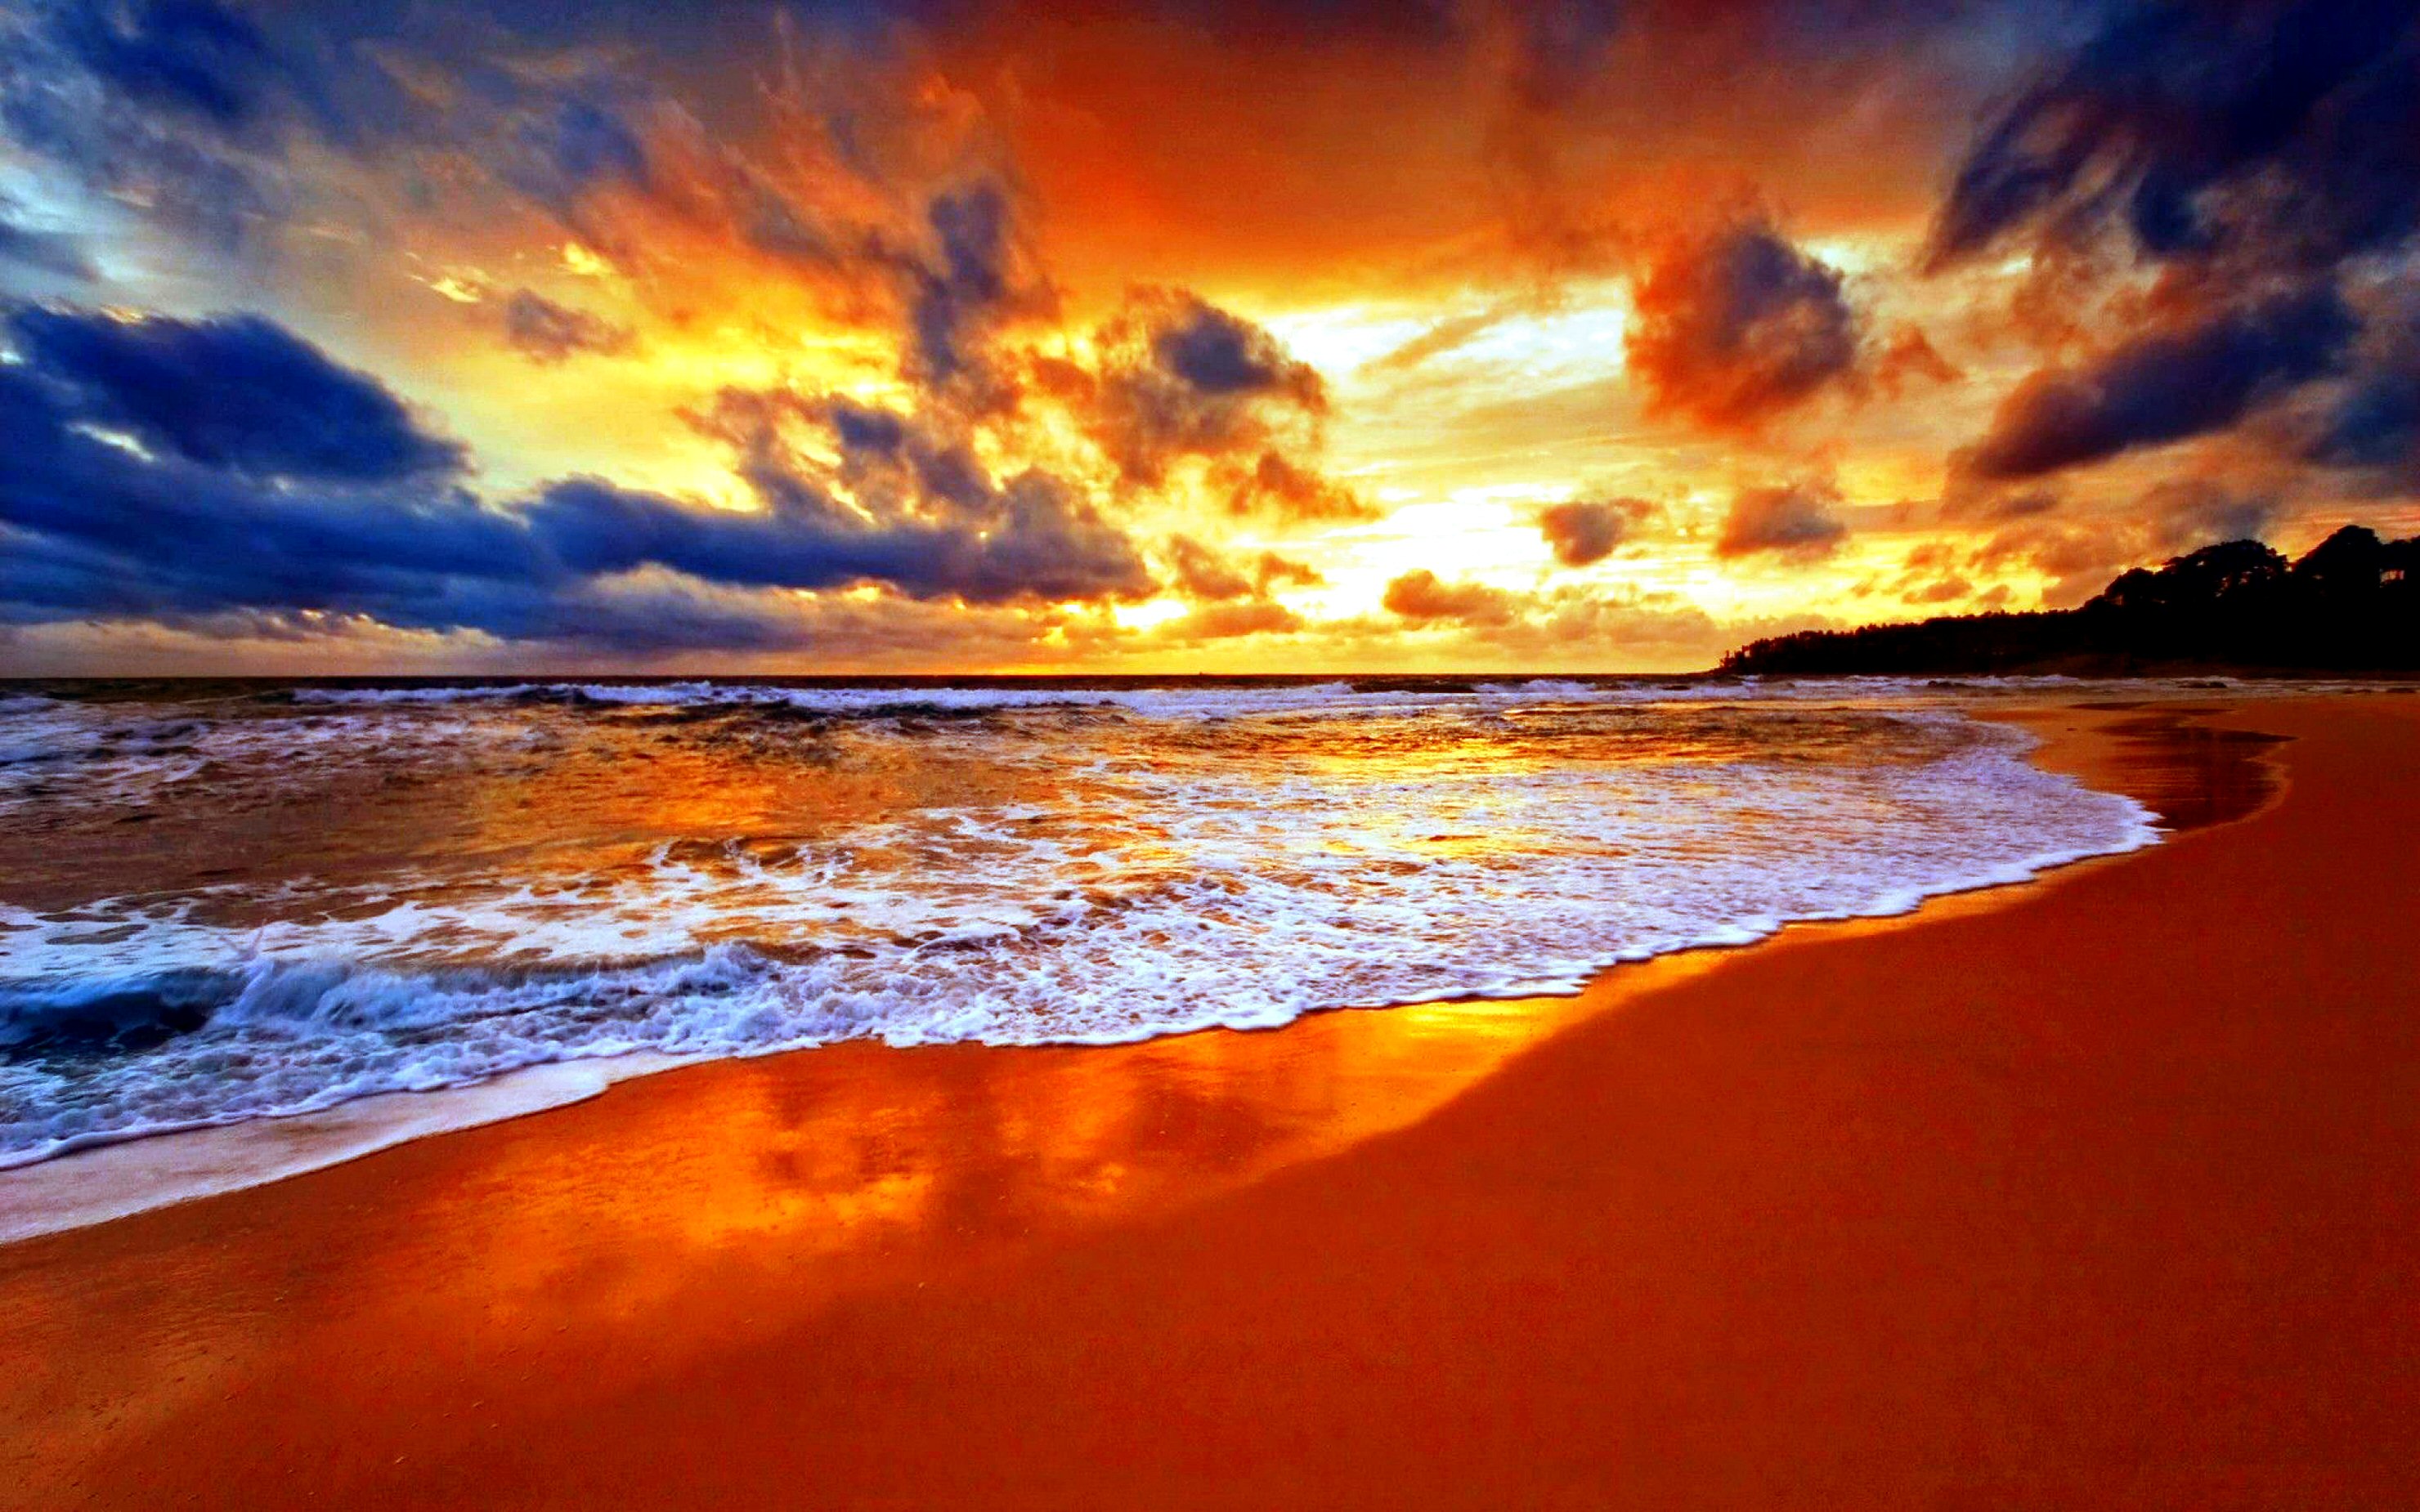 Hãy khám phá bãi biển HD với những đợt sóng êm ái, nắng vàng rực rỡ cùng không gian thoáng đãng. Cảm giác thư giãn và tươi mới sẽ lan tỏa đến tất cả các giác quan của bạn.